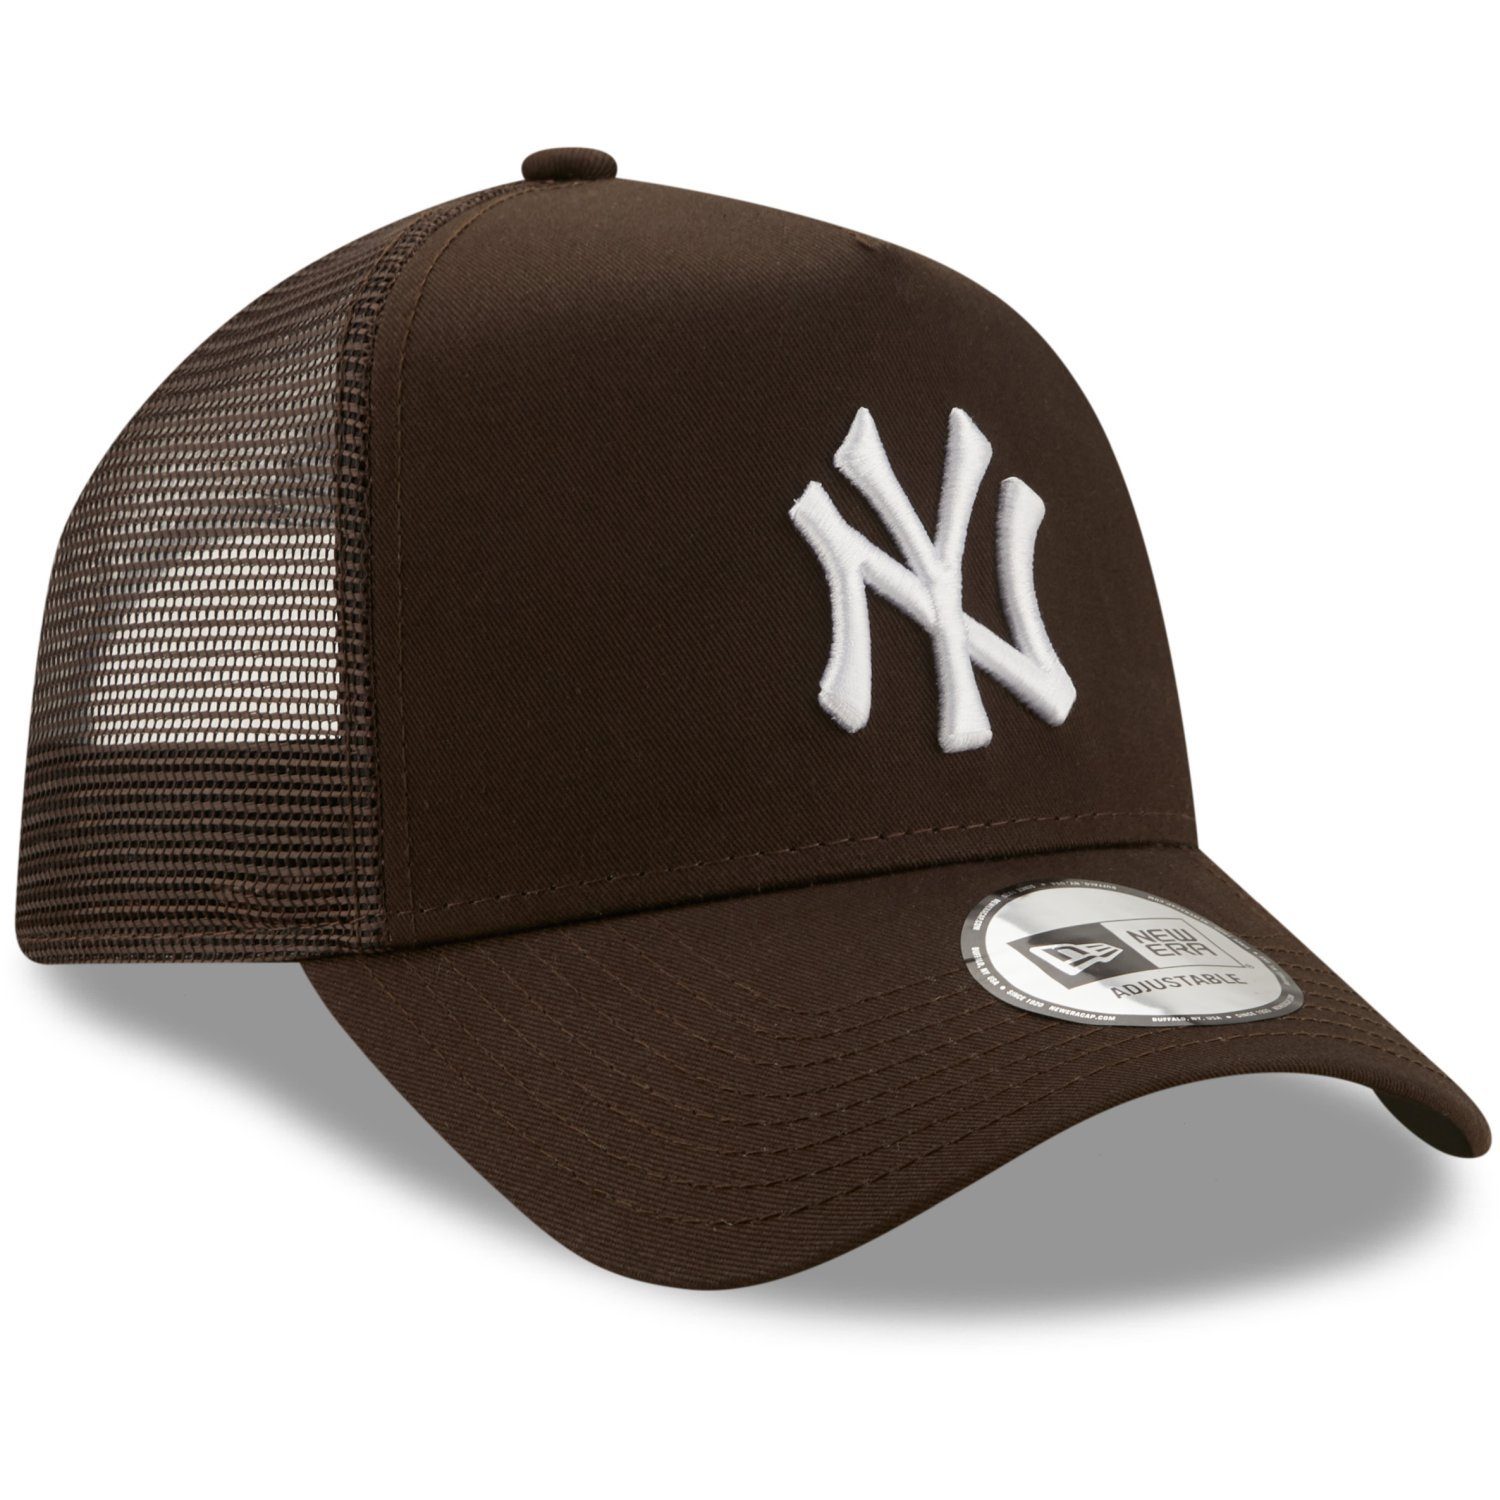 Trucker Cap Era Trucker New York Yankees AFrame New